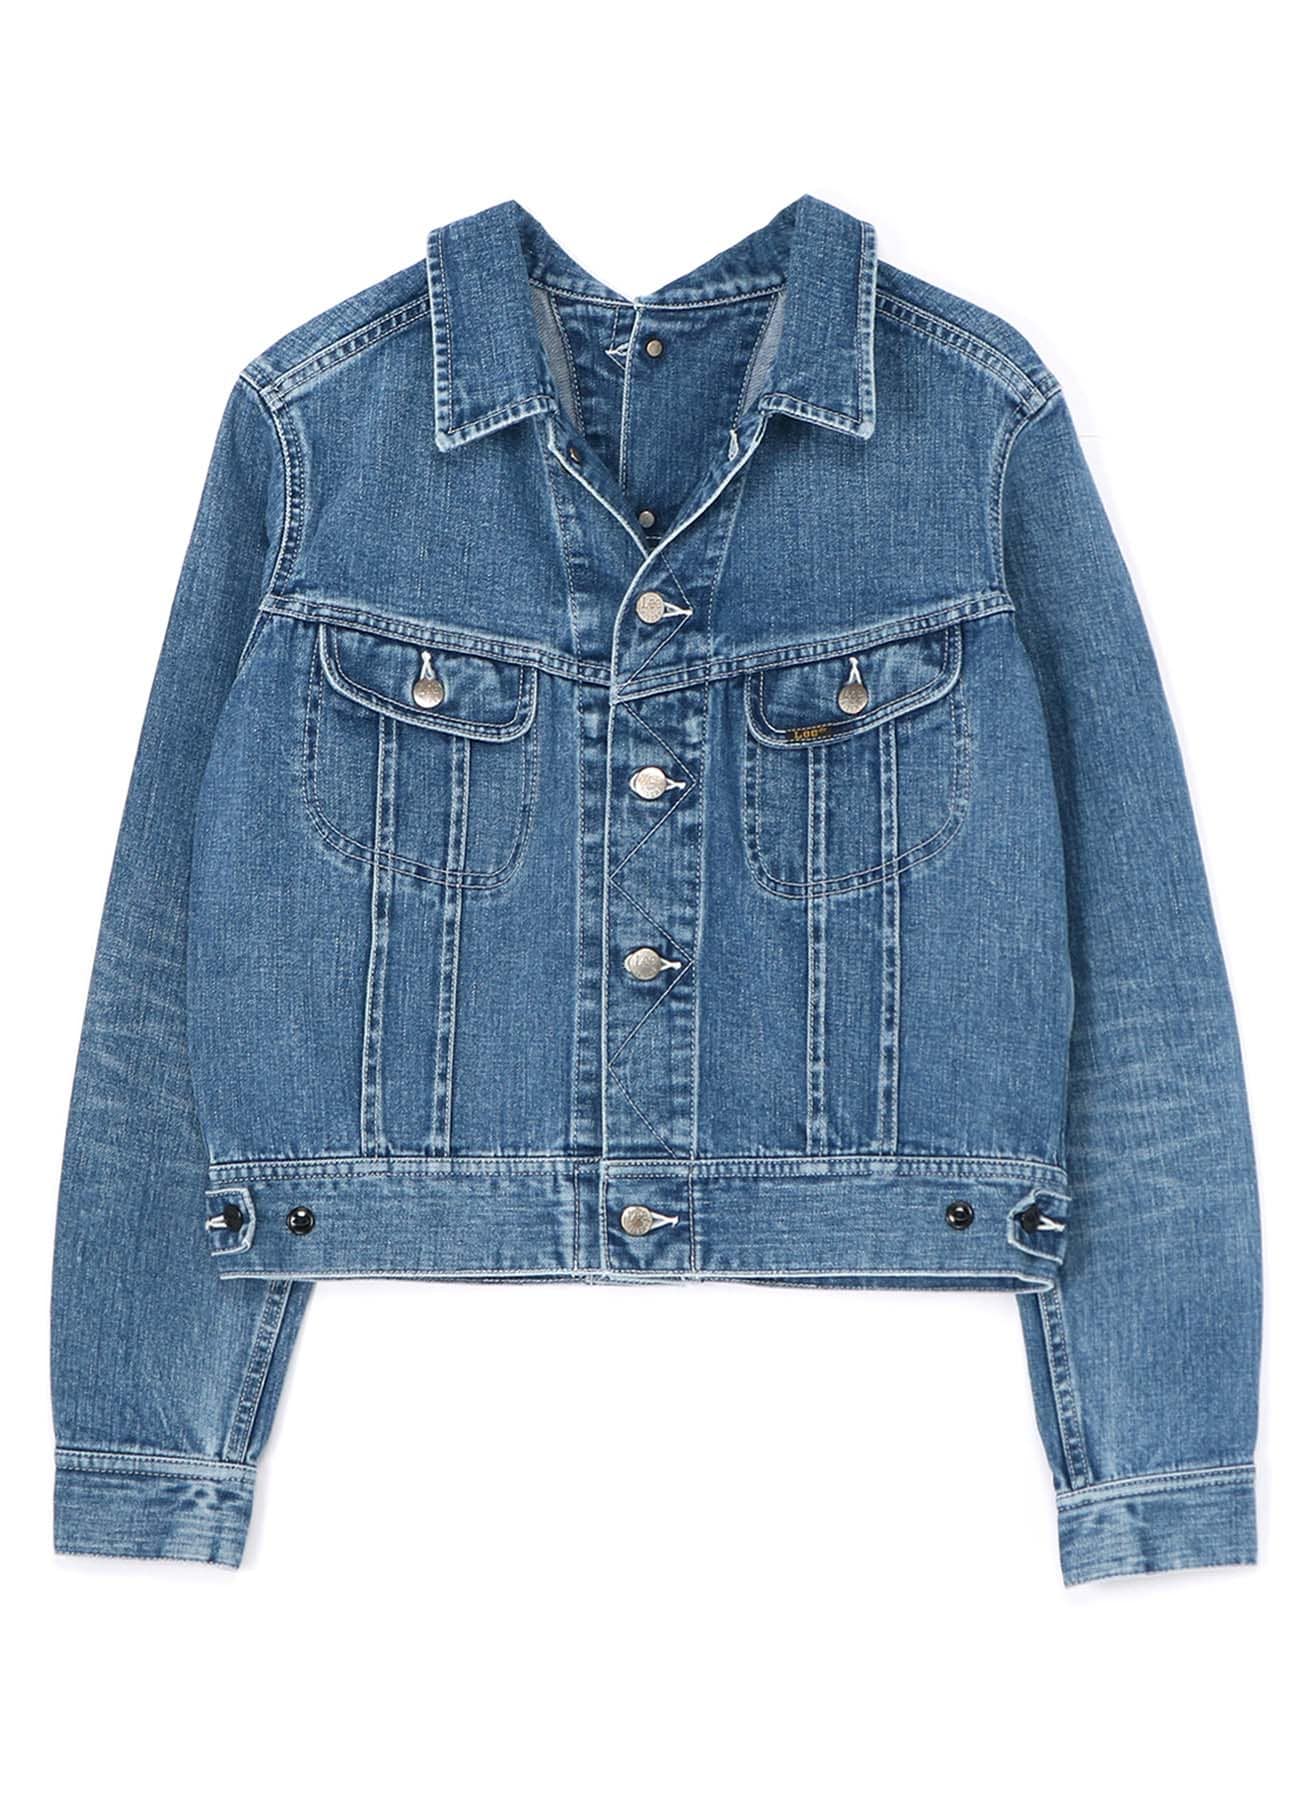 LIMI feu×Lee Reversible Jacket(S Blue): Vintage 1.1｜THE SHOP 